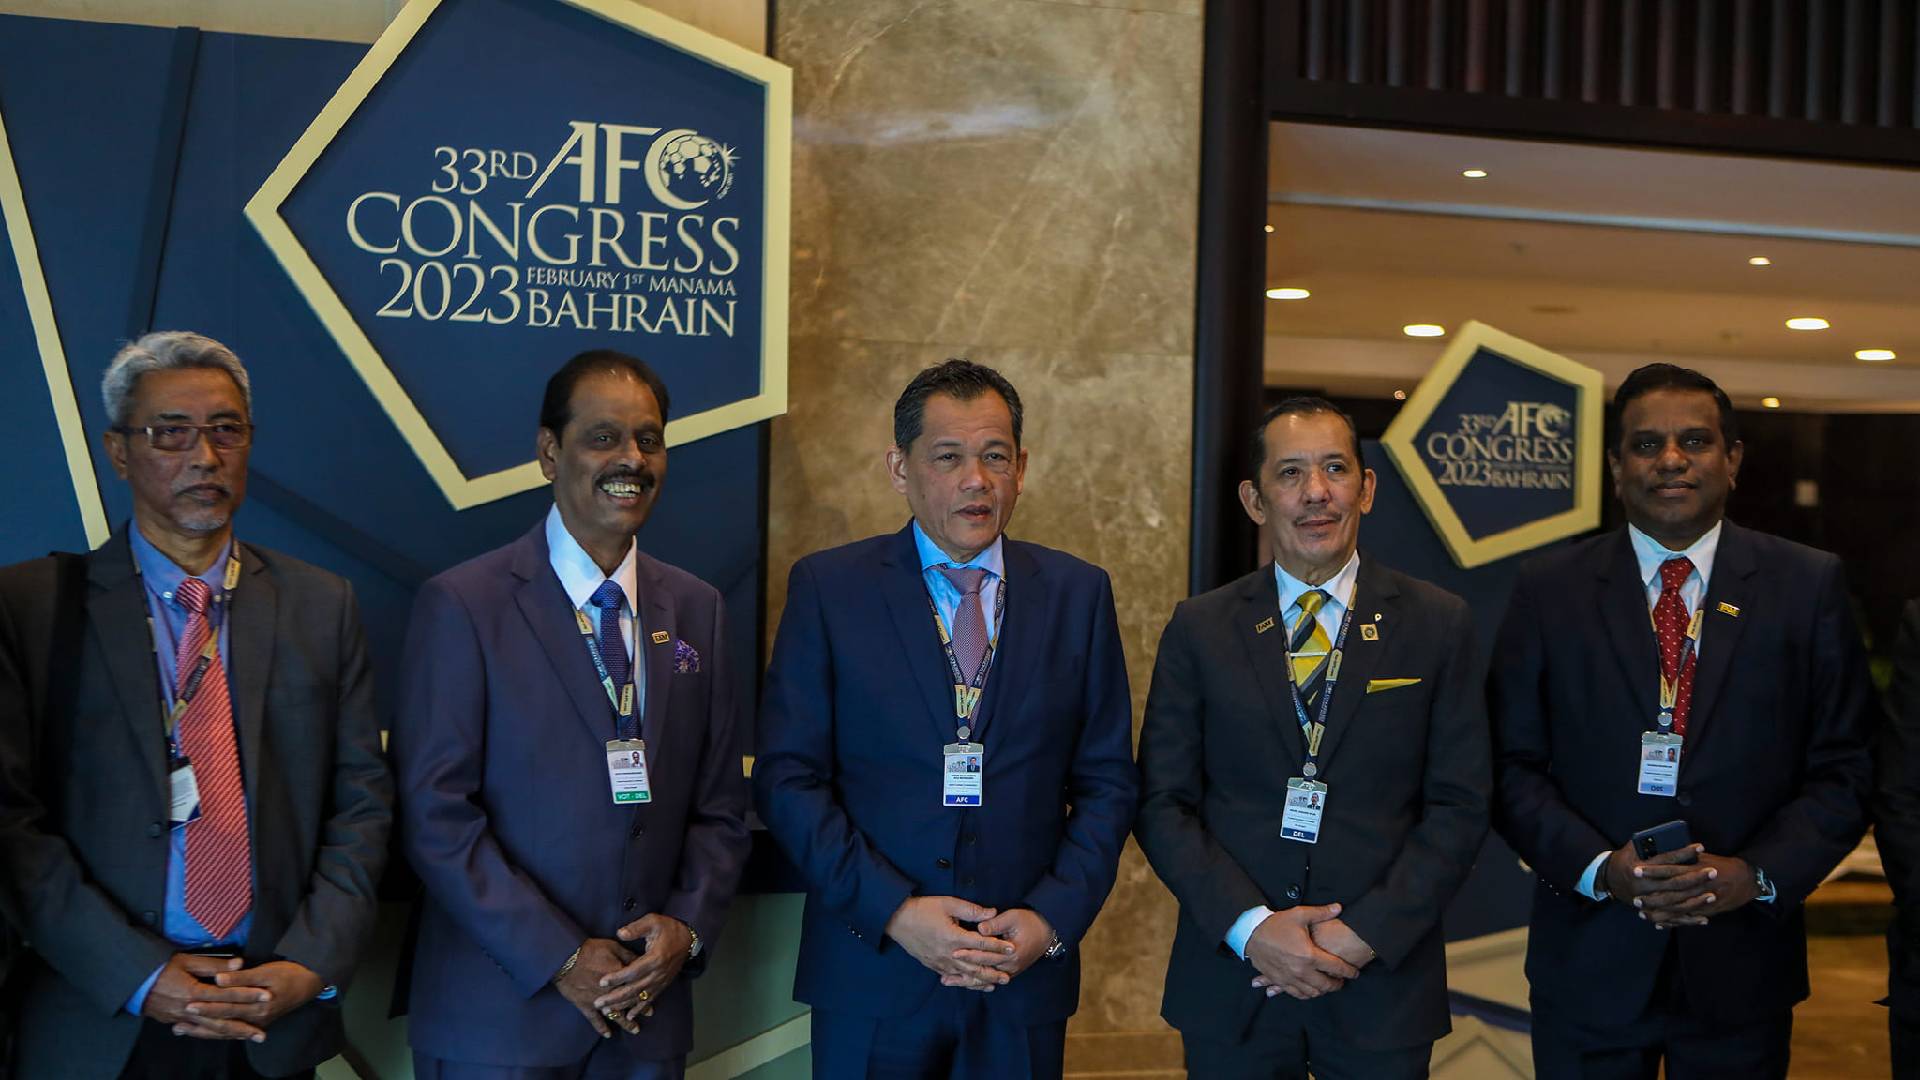 Kongres AFC Ke 33 FA Malaysia Hamidin Mahu Dunia Kenal Bola Sepak Malaysia